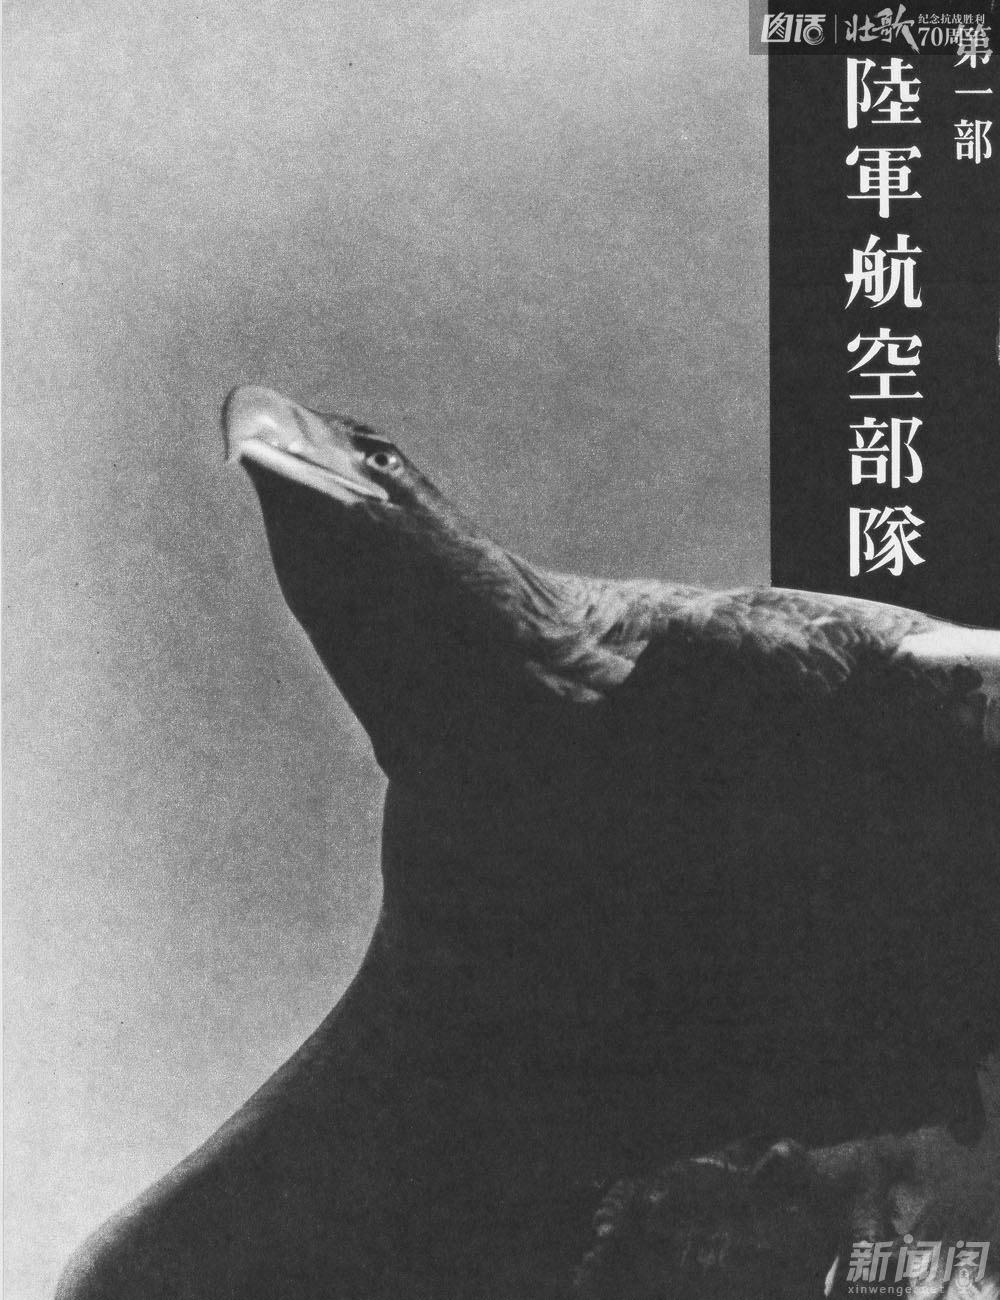 图为朝日新闻社出版日本陆军航空部队的《支那事变写真全辑·六·荒鹫部队》首页图。